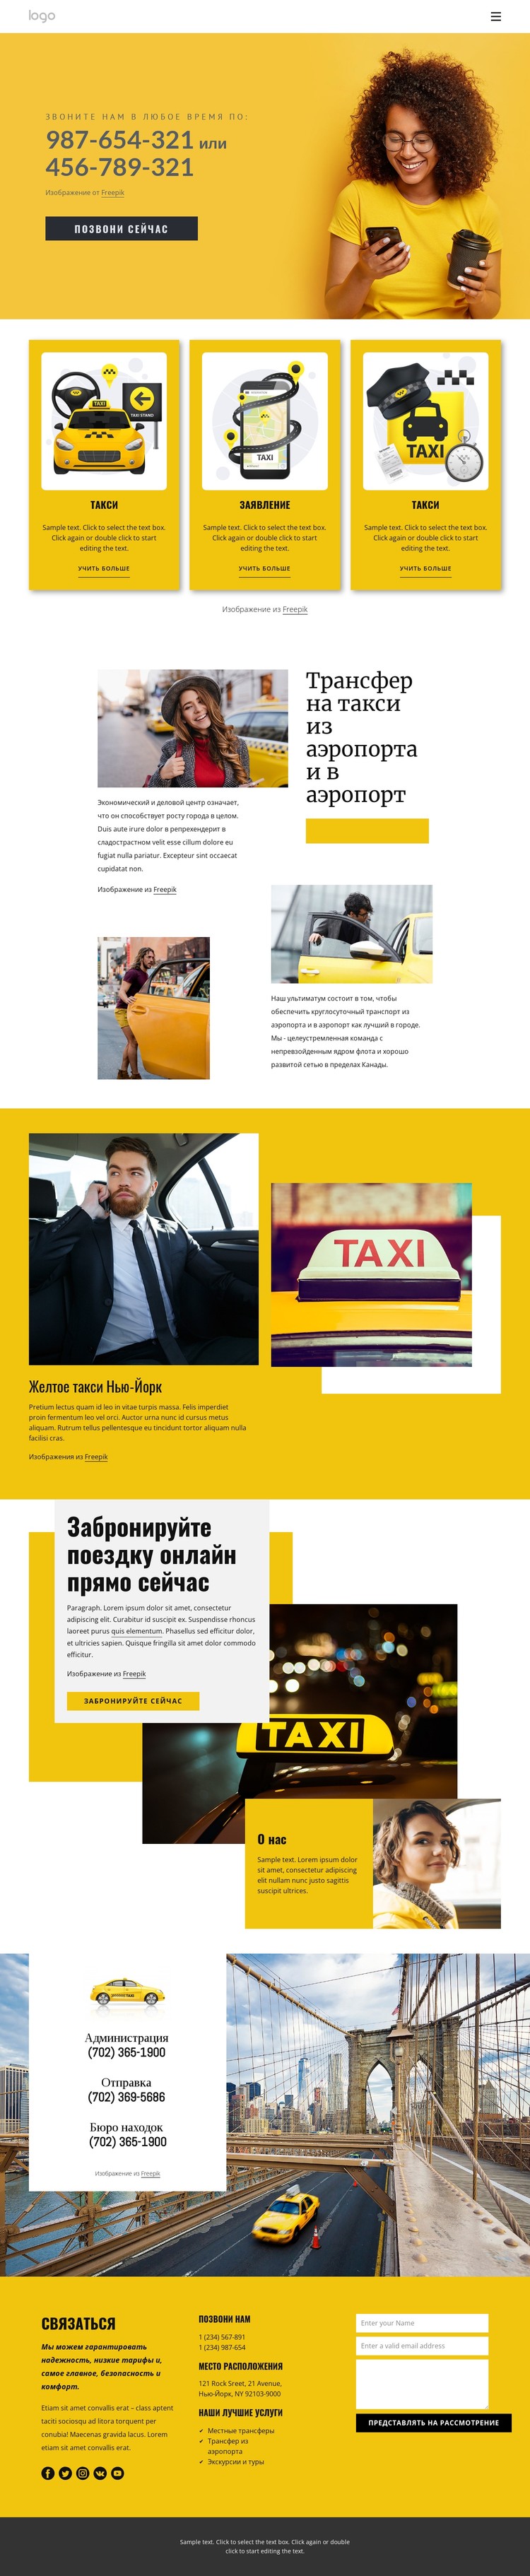 Качественное такси CSS шаблон